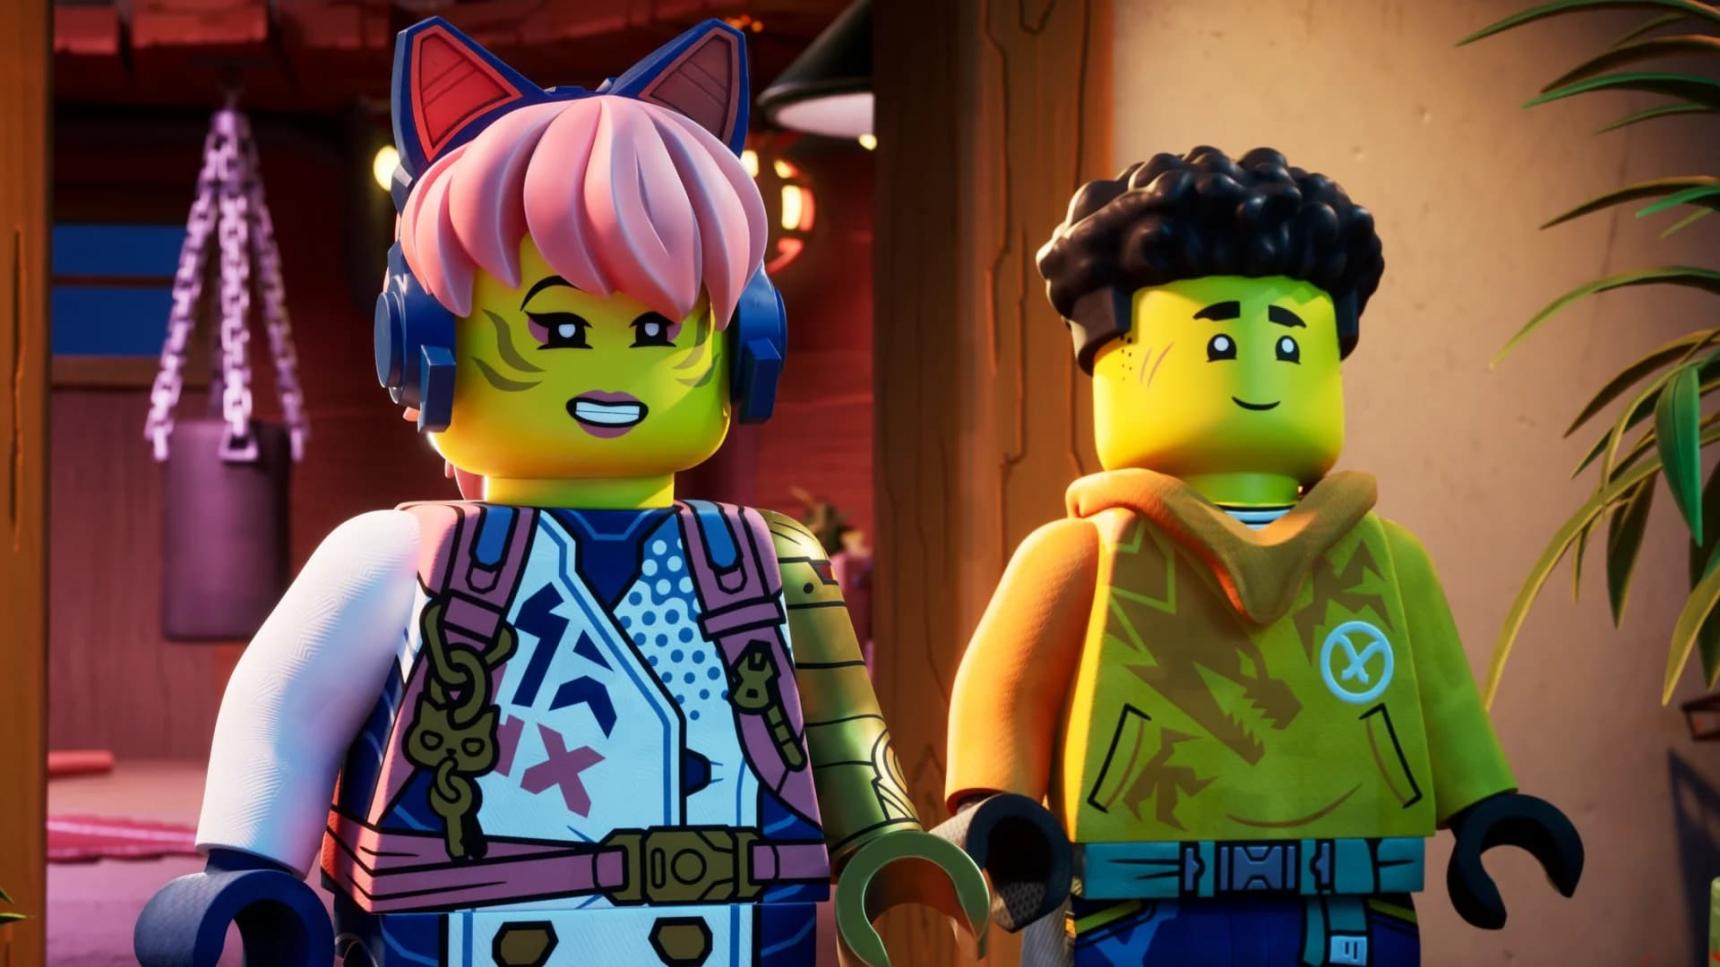 Poster del episodio 1 de LEGO Ninjago: El renacer de los dragones online